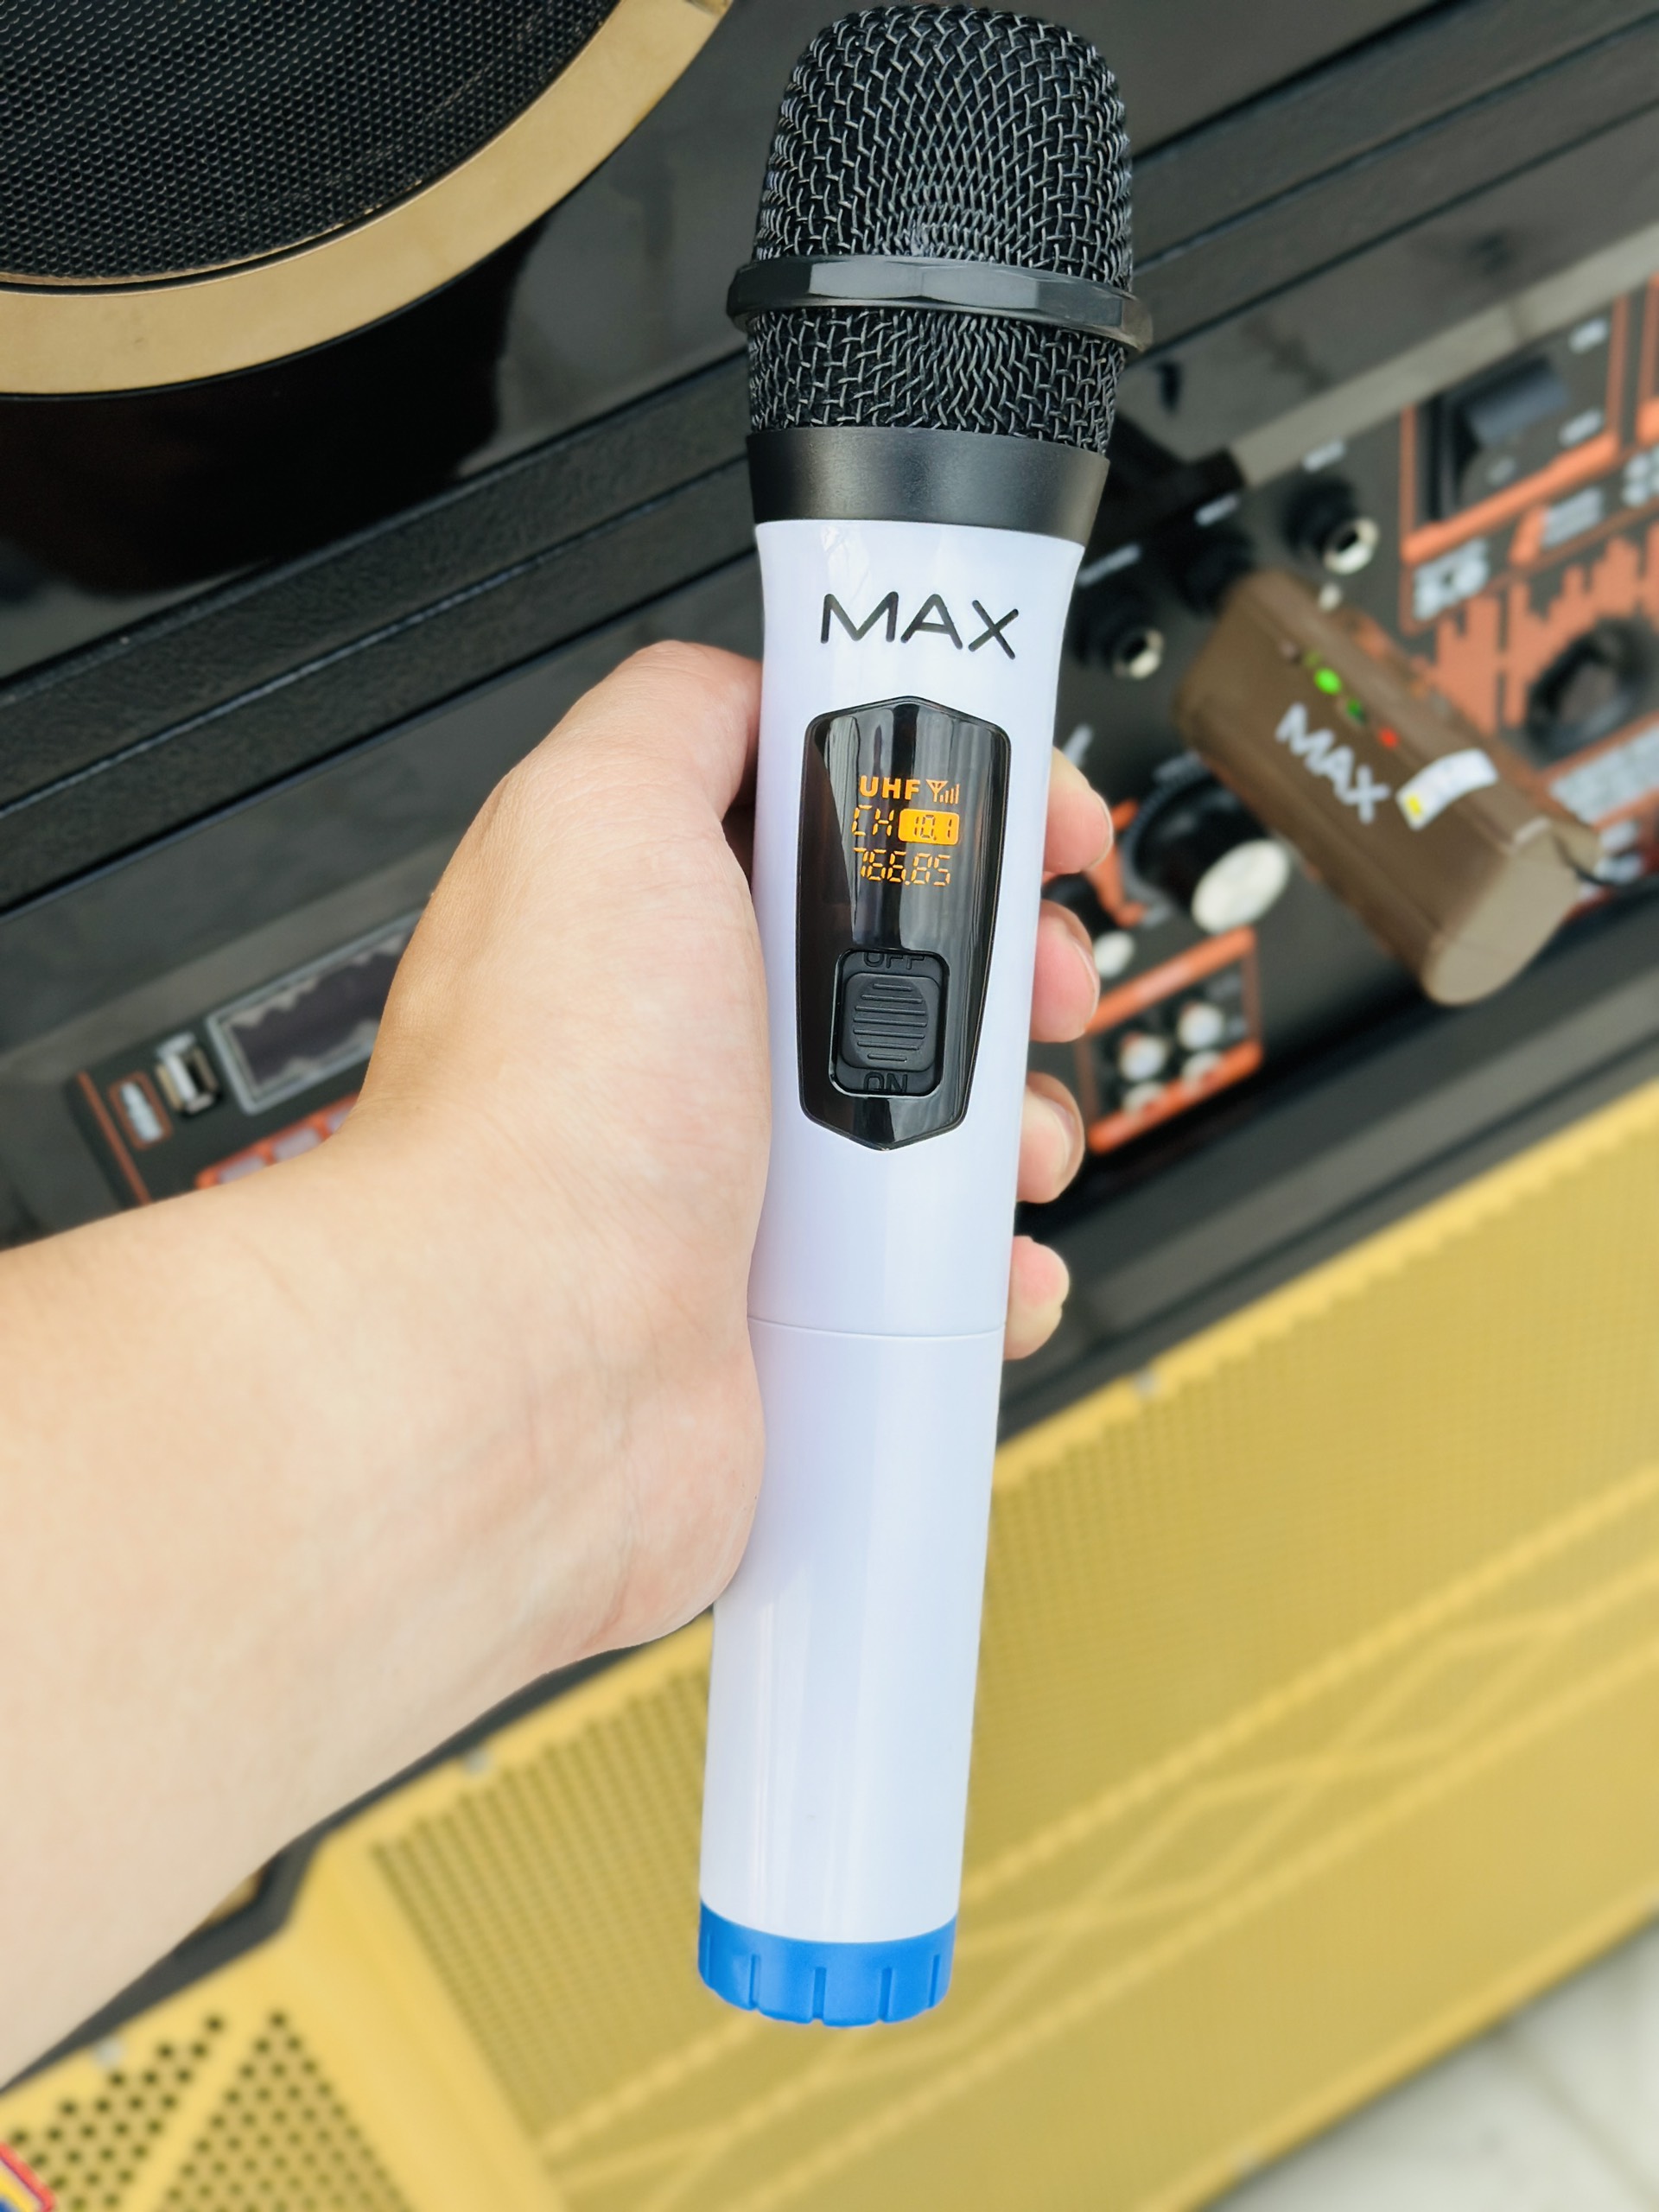 Hình ảnh Micro không dây đa năng Max 21 - Micro không dây giá tốt, sử dụng cho mọi loại thiết bị âm thanh - Micro dành cho loa kéo, loa bluetooth, amply - Màn hình Led hiển thị thông số - Âm thanh cực hay, giá cực rẻ